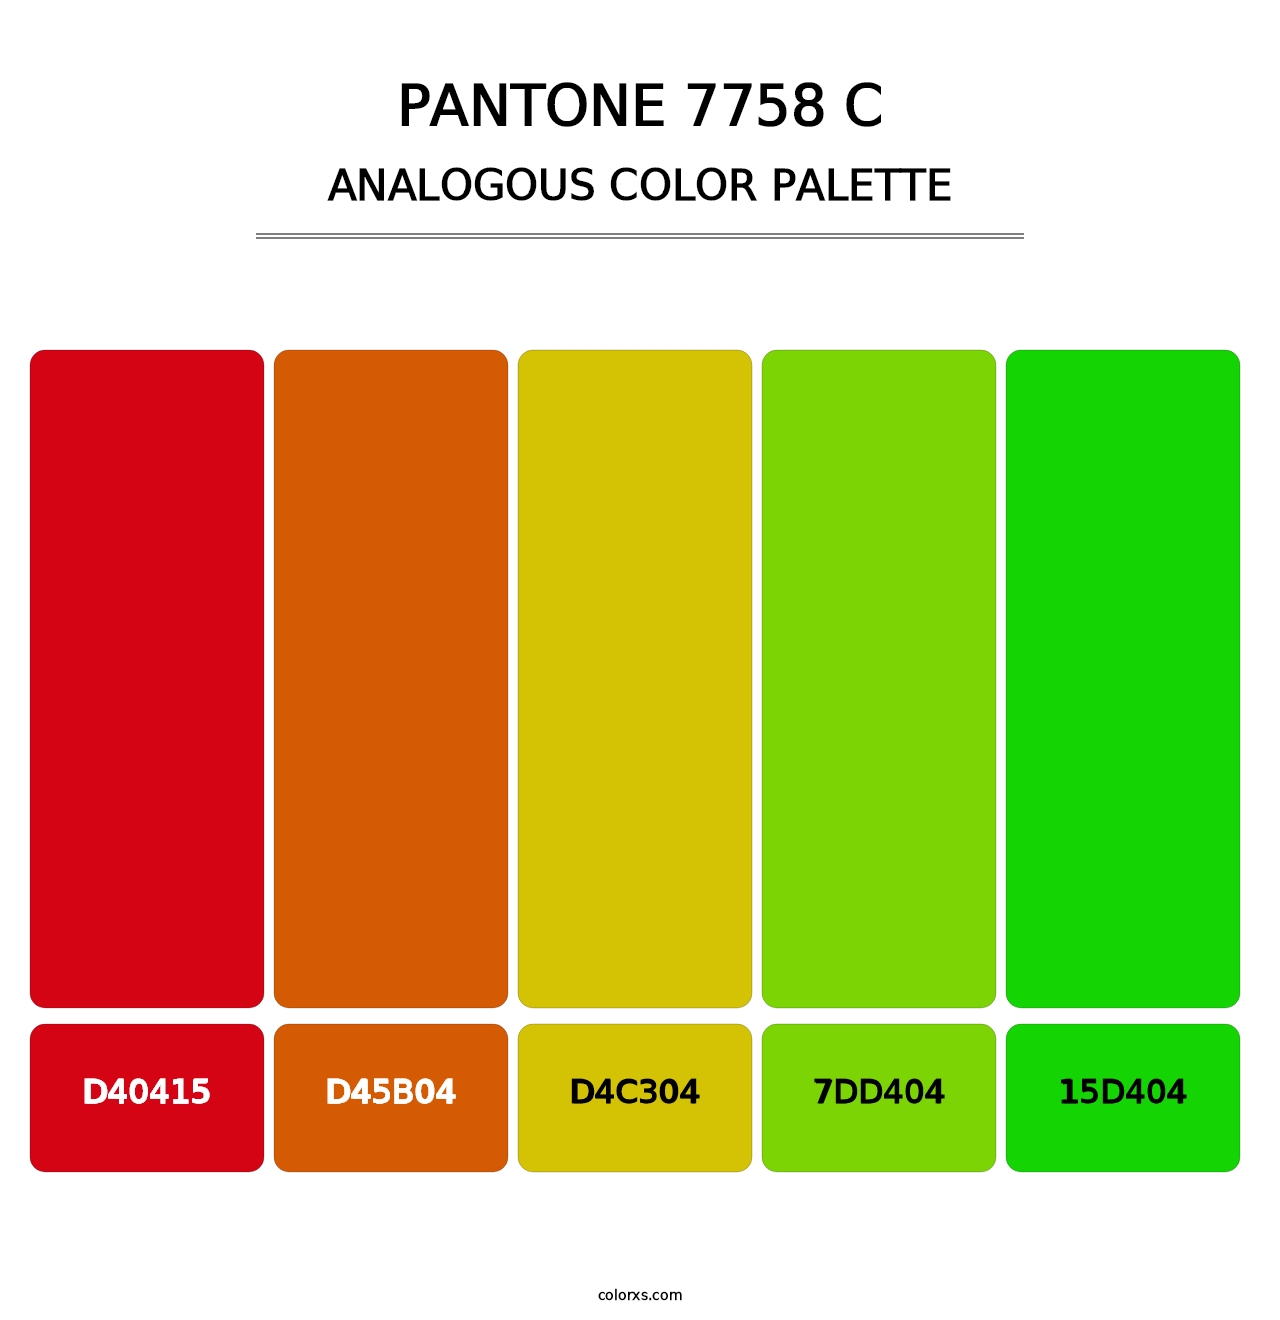 PANTONE 7758 C - Analogous Color Palette